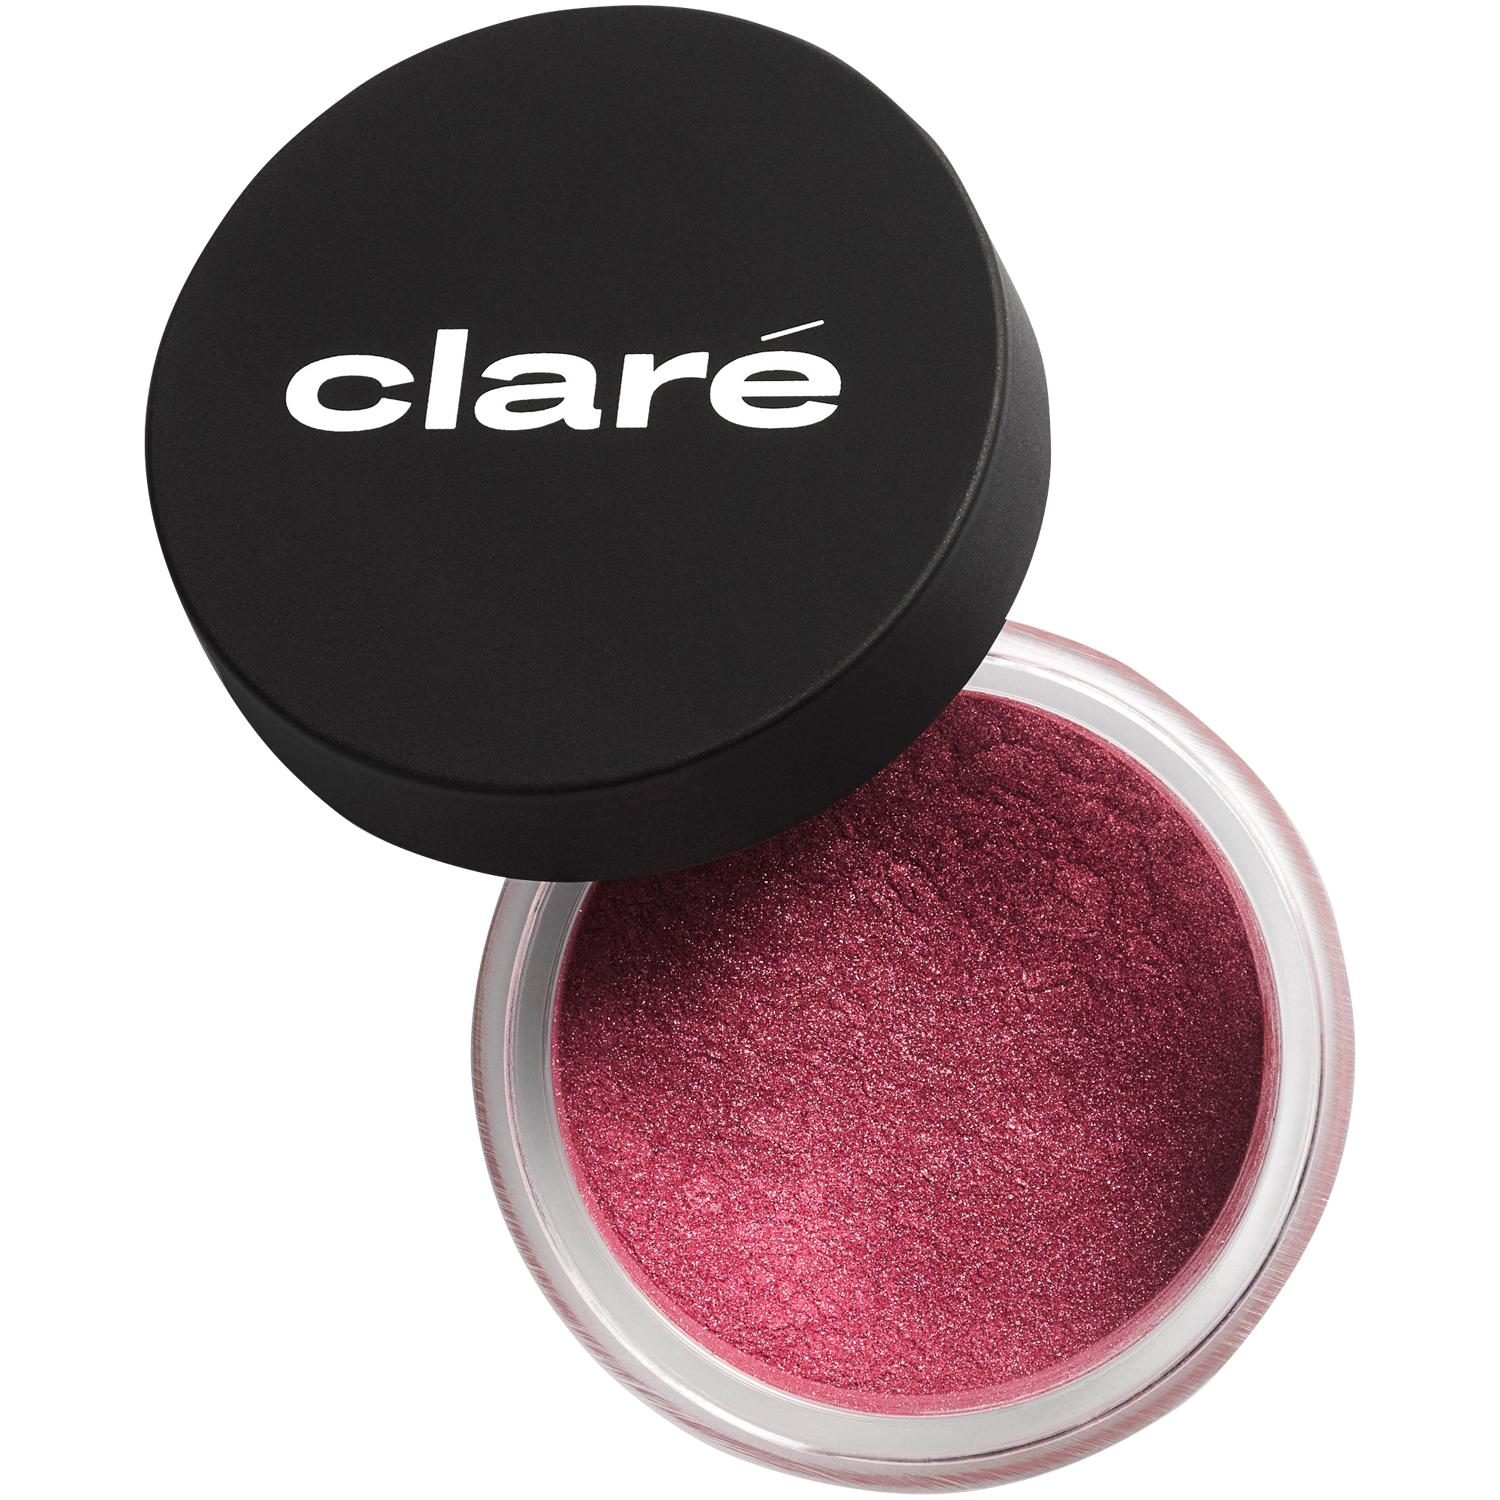 Атласные тени малина 877 Claré Clare Makeup, 1 гр атласные тени для век холодного телесного цвета 900 claré clare makeup 1 гр